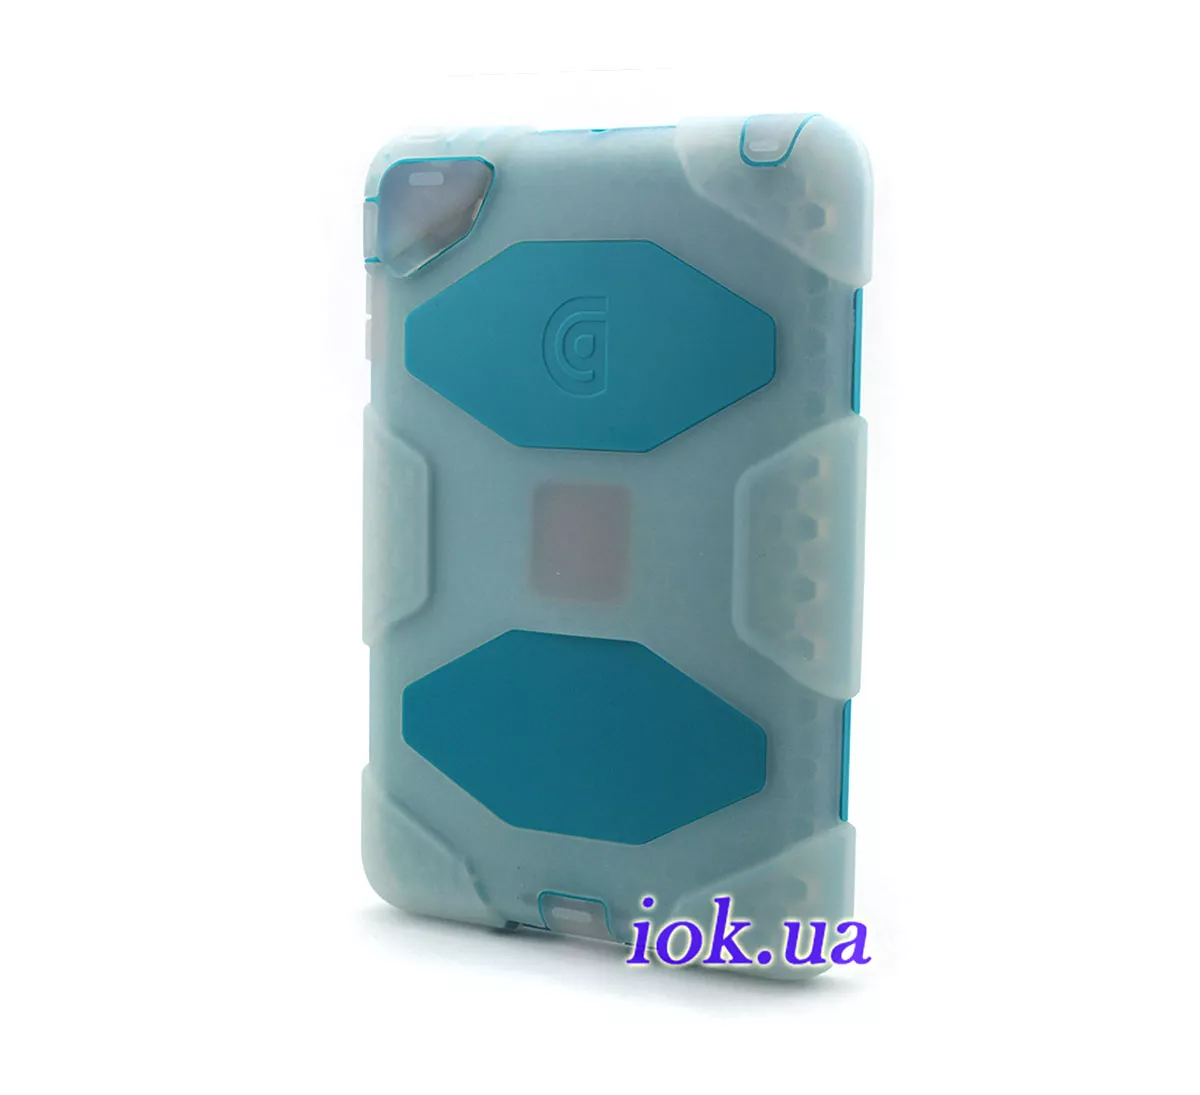 Резиновый чехол Griffin Survivor для iPad Mini 1/2, прозрачный, голубой